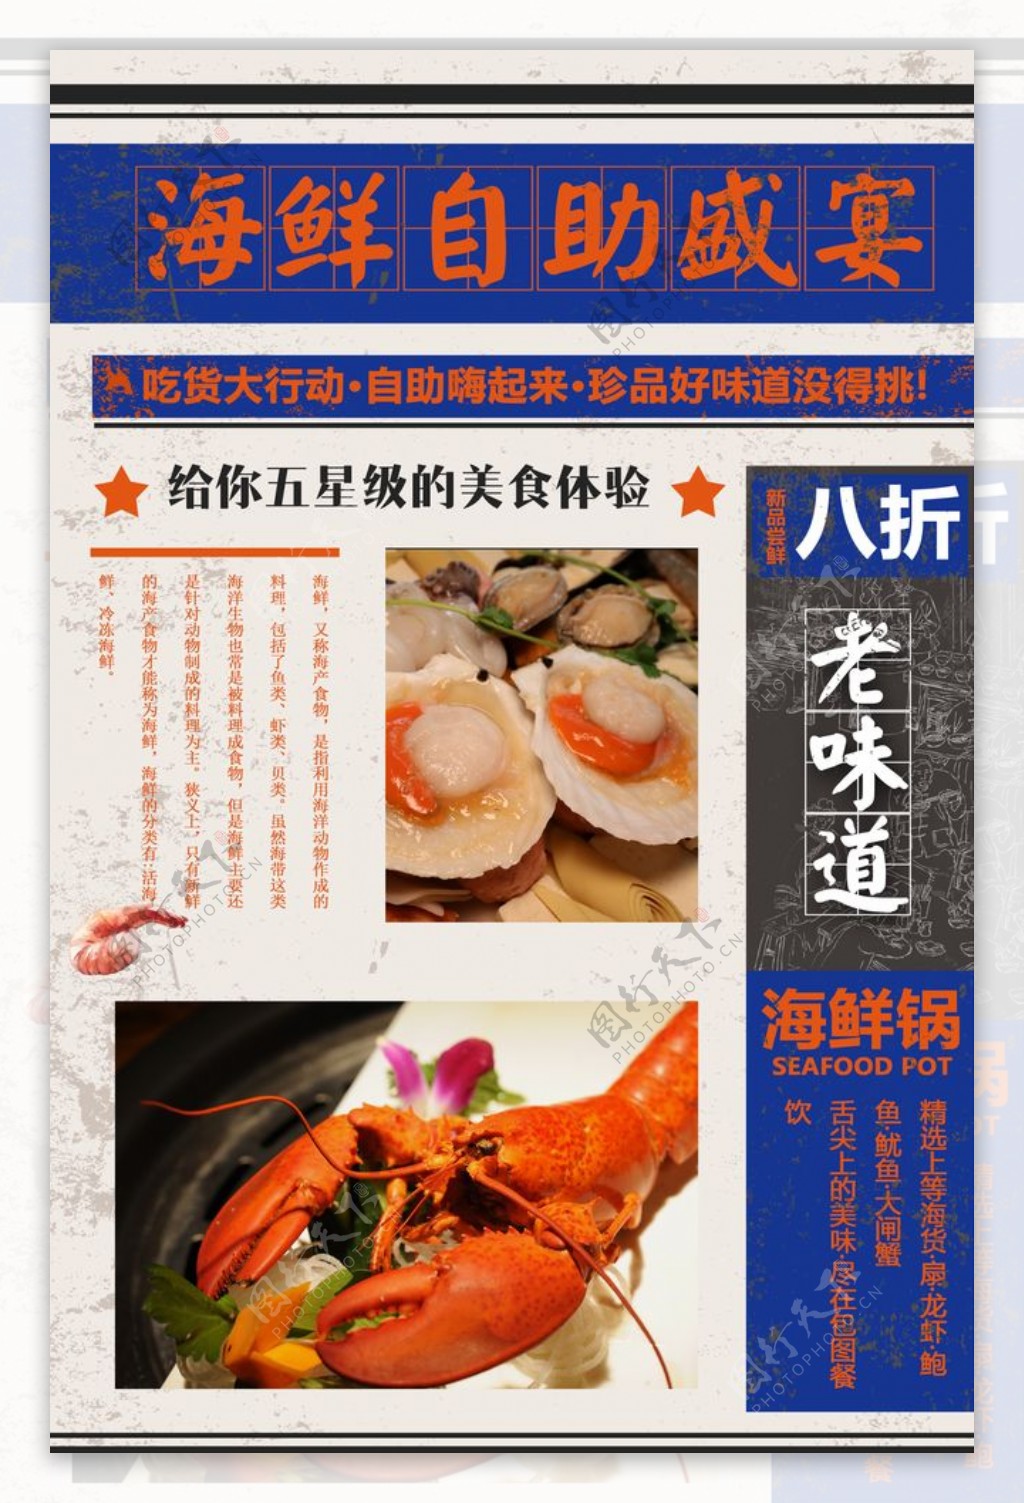 海鲜自助餐饮海报图片